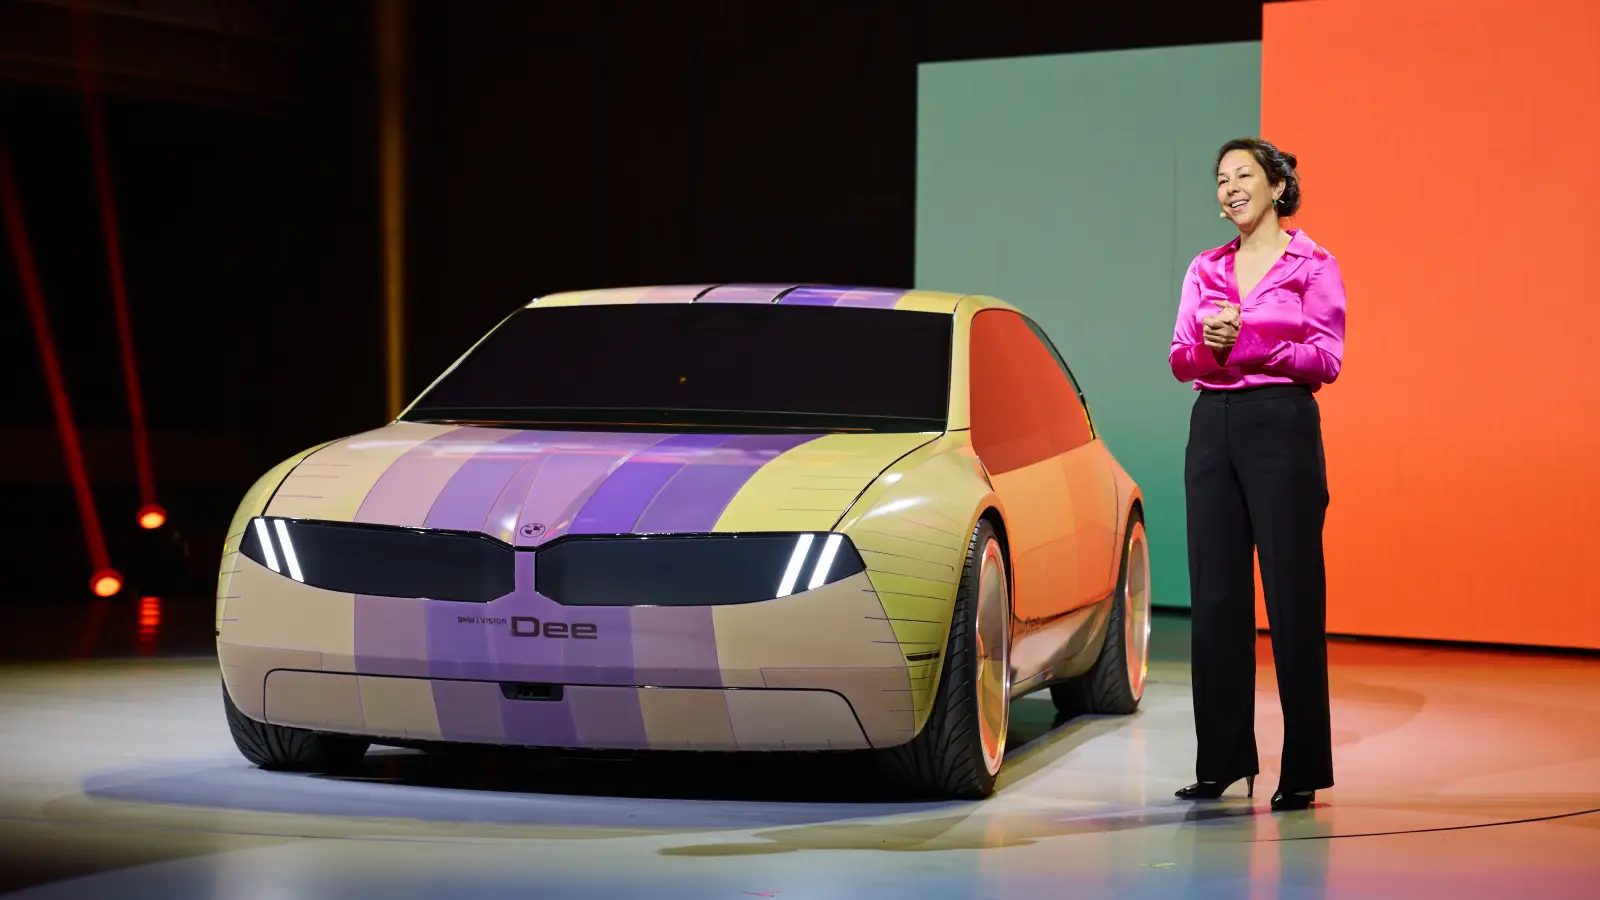 BMW gây trầm trồ với xe đổi màu 100 sắc thái, lái xe như chơi game thực tế ảo